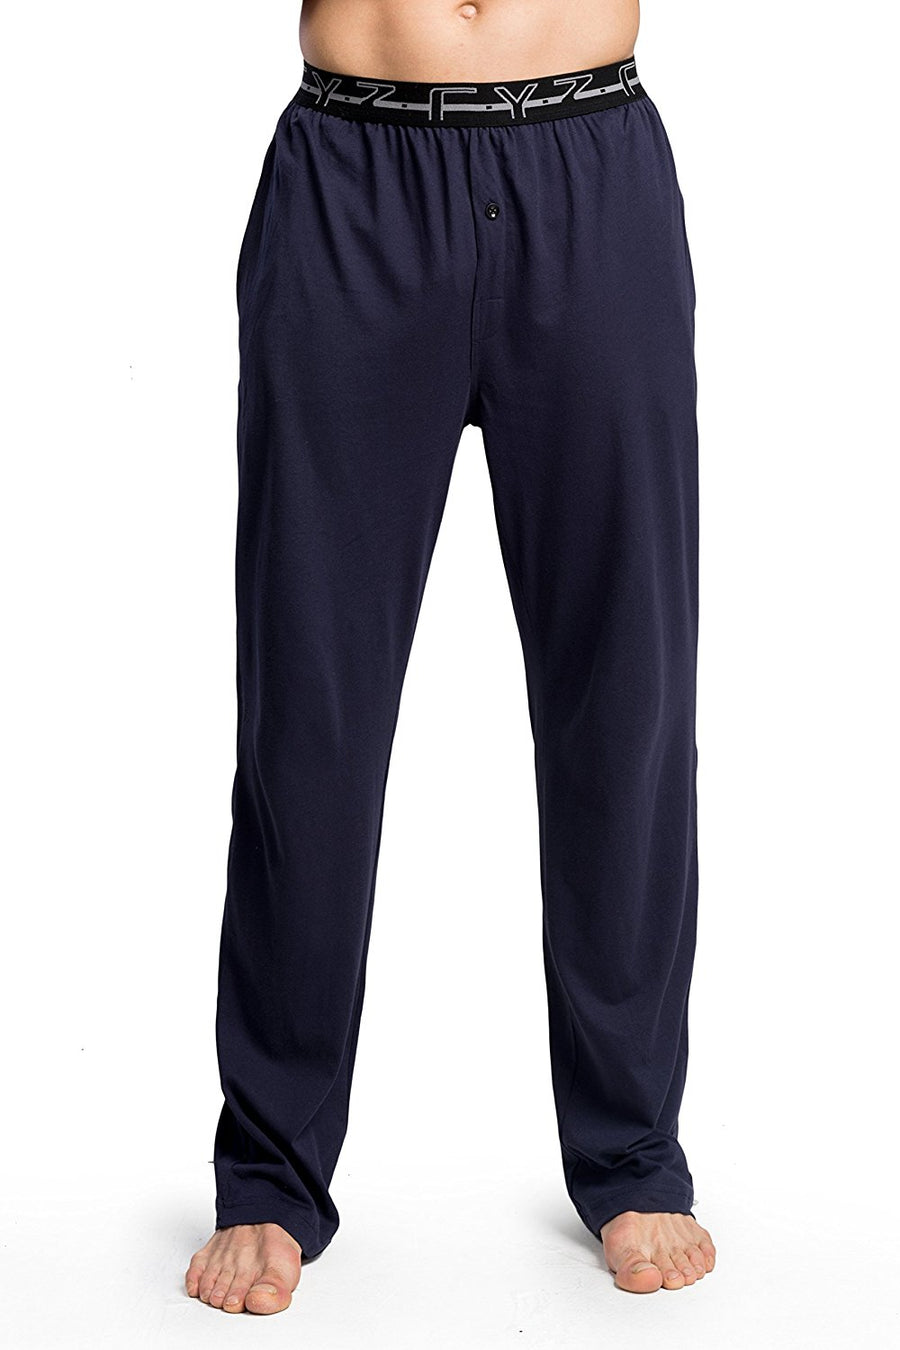 CYZ Men's 100% Cotton Knit Pajama Pants